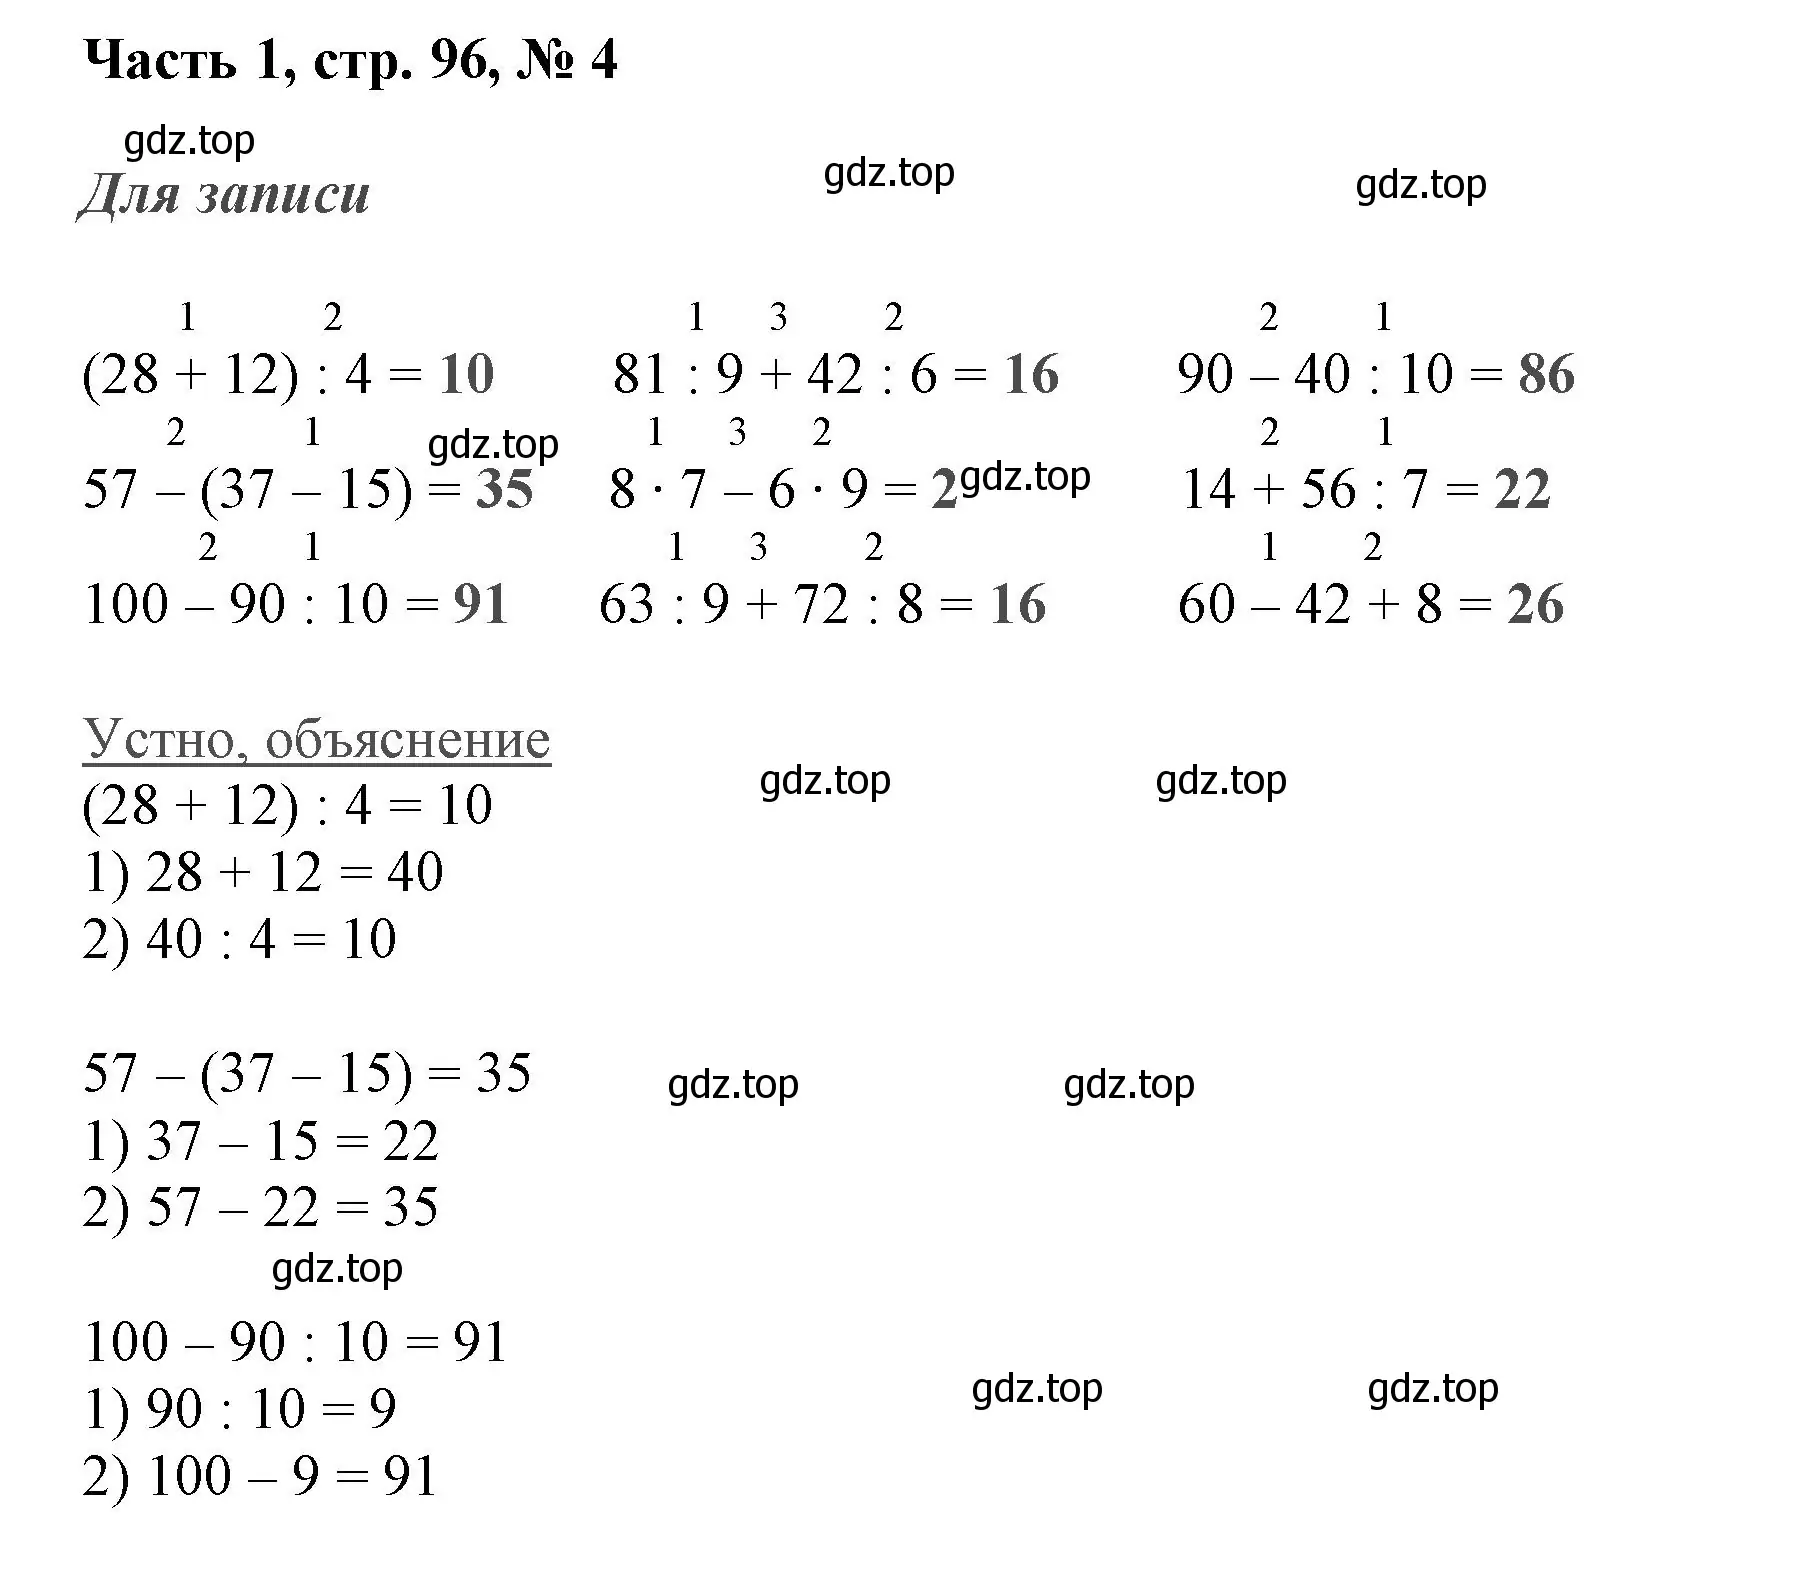 Решение номер 4 (страница 96) гдз по математике 3 класс Моро, Бантова, учебник 1 часть